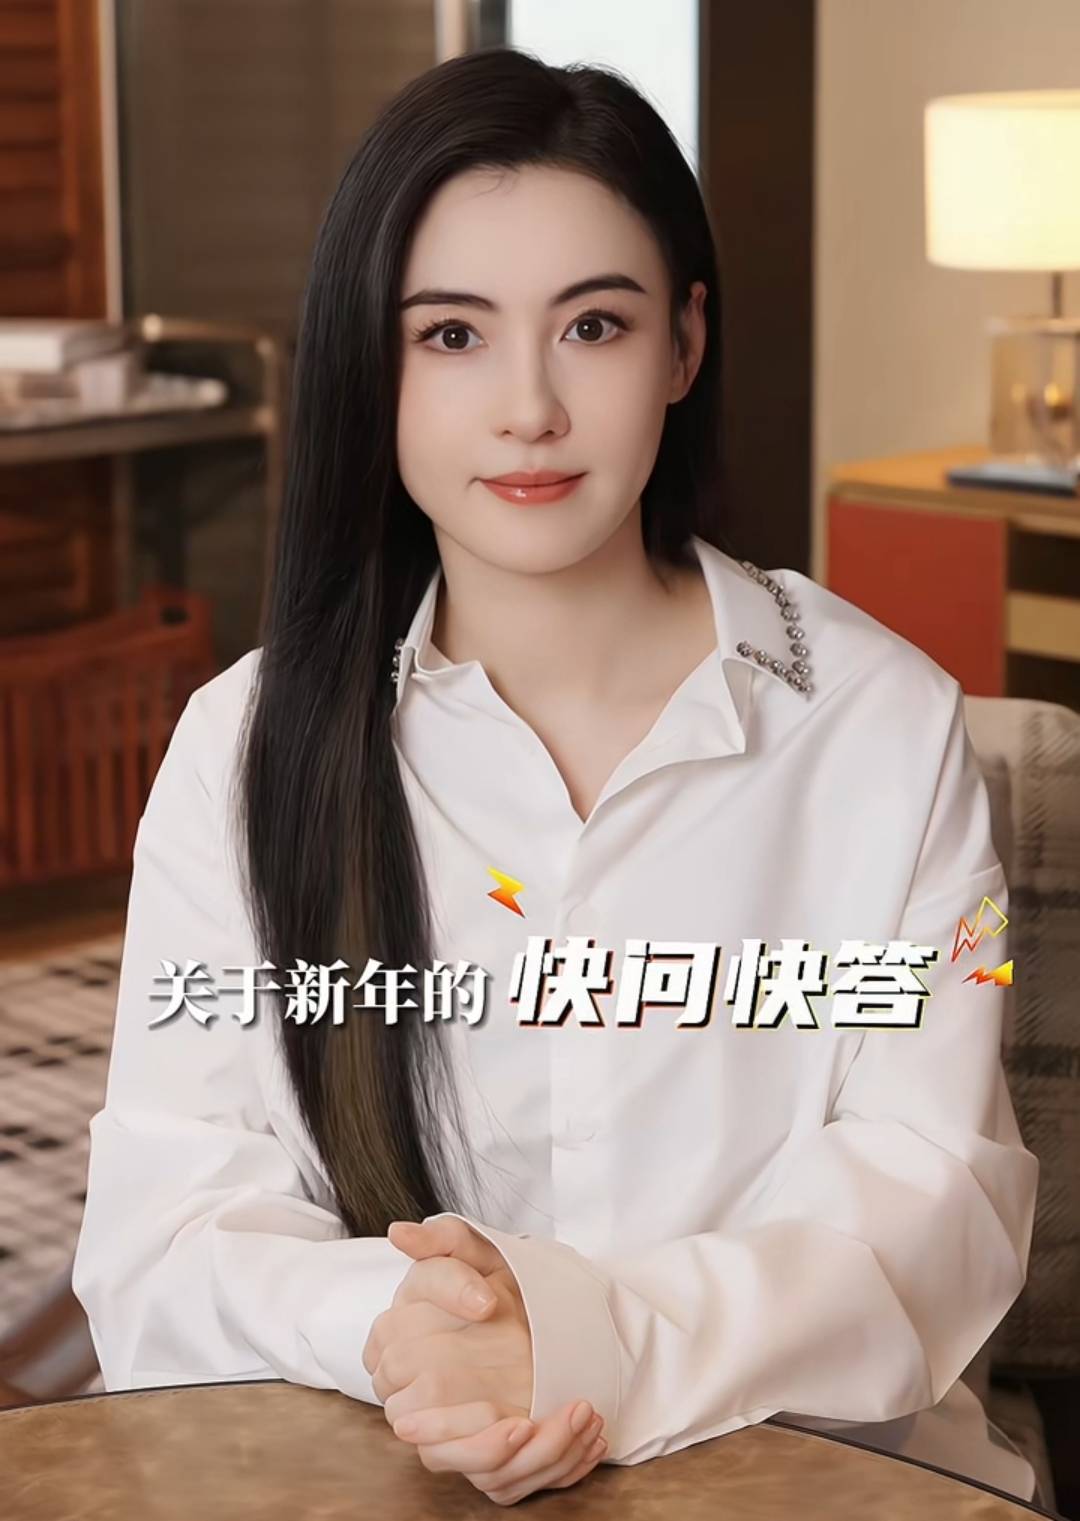 张栢芝 张栢芝最新一段影片在上月13日上载，主题为关于新年的快问快答，片中可见她面圆圆孕味劲浓。